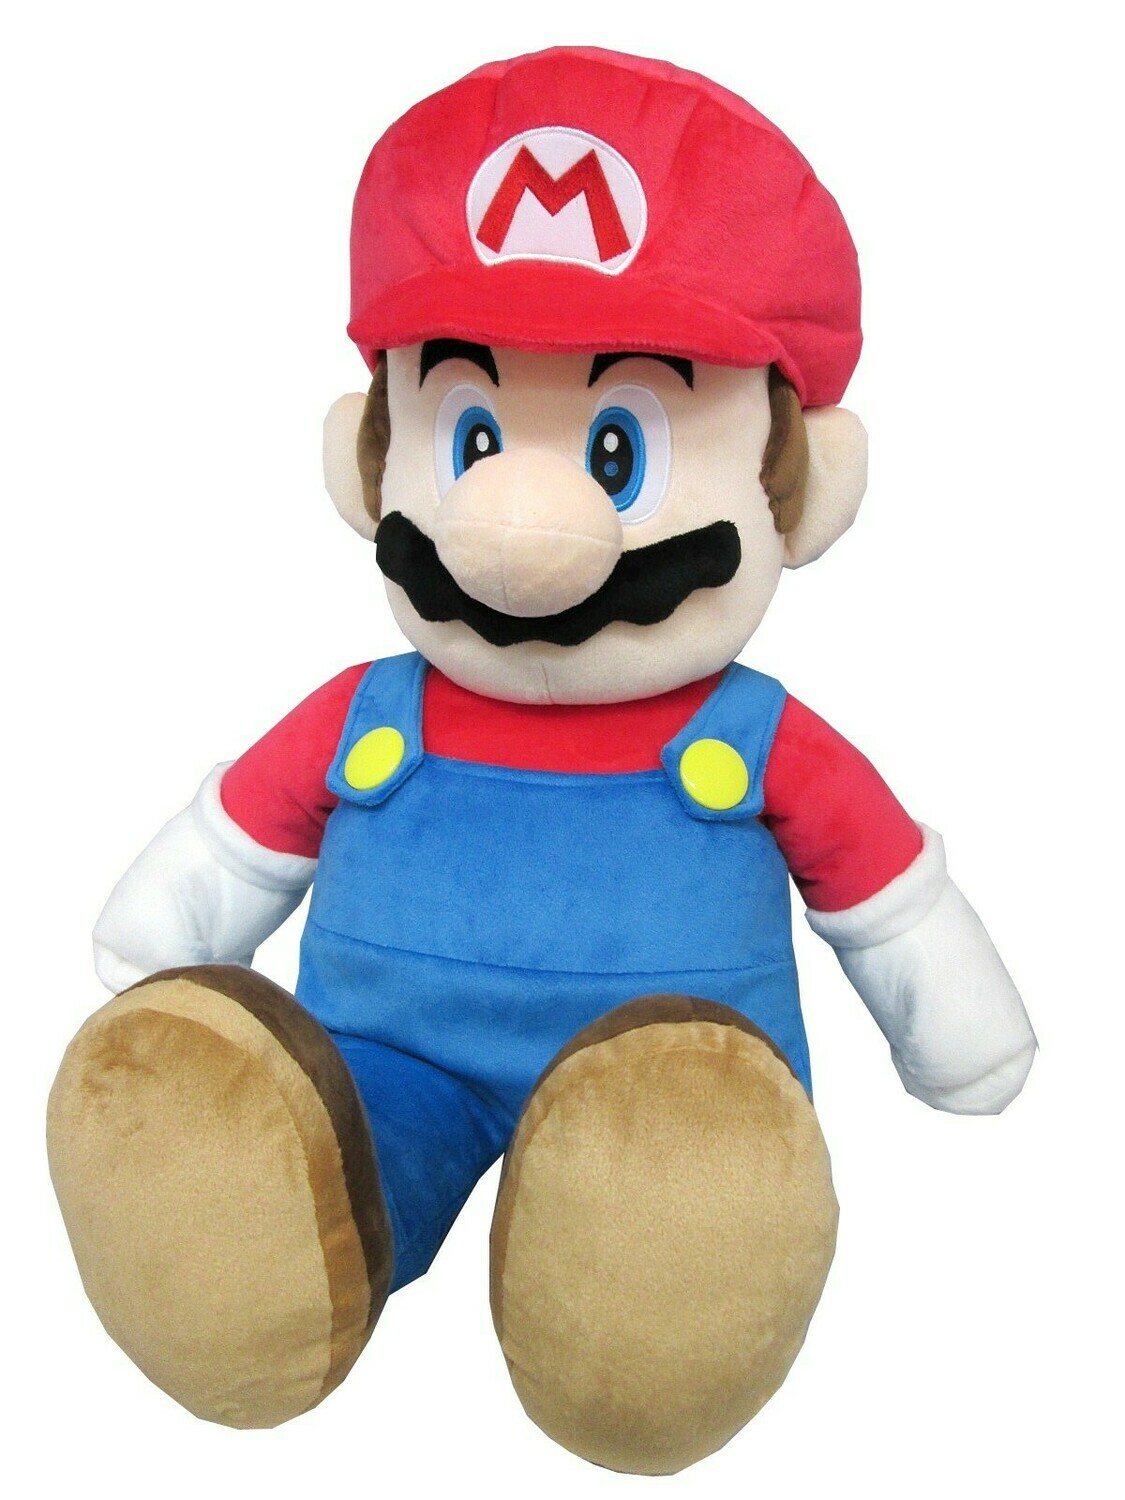 Super Mario All Stars Plush Doll - Mario 24 Inch